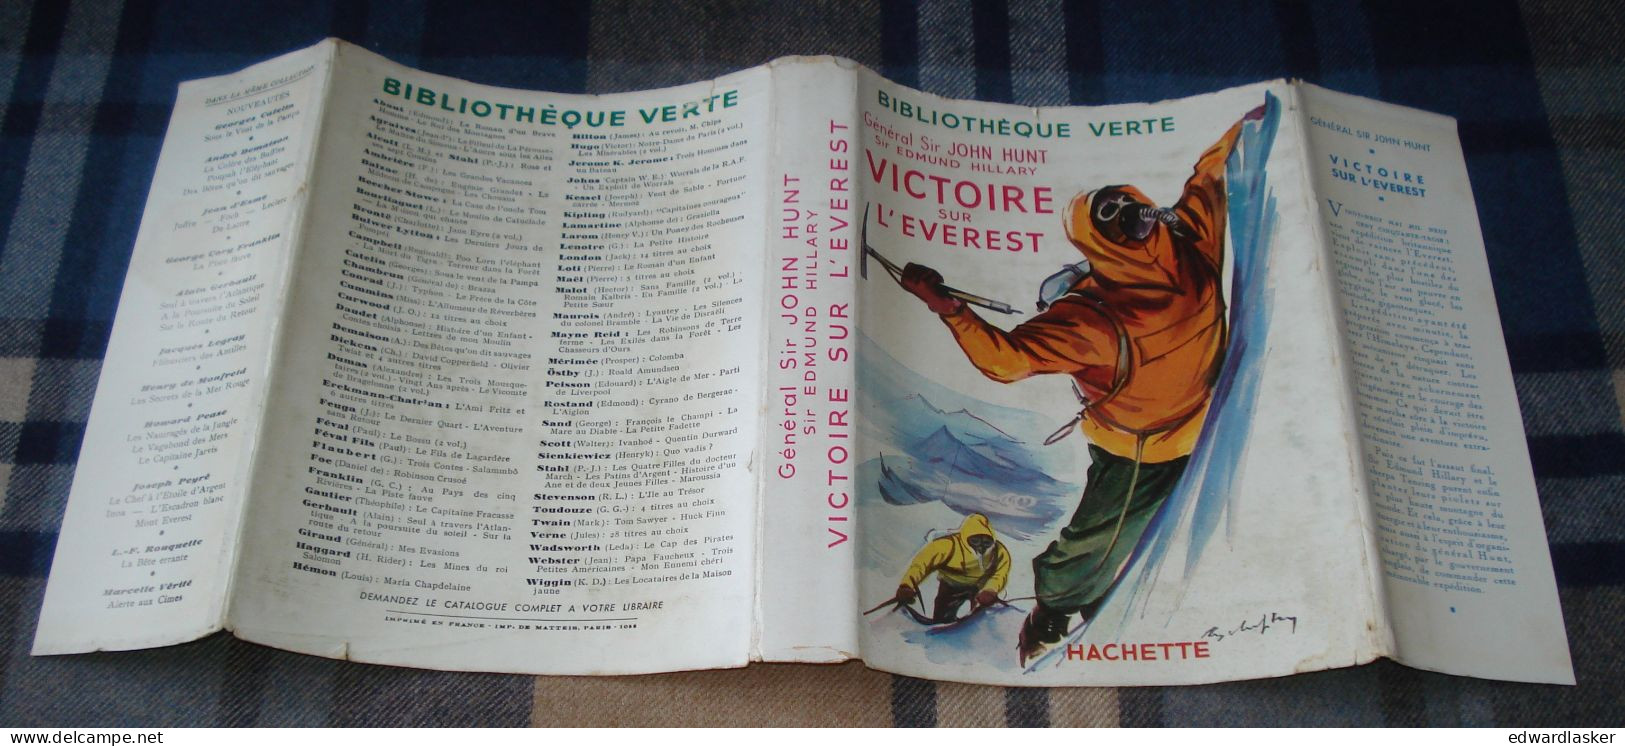 BIBLIOTHEQUE VERTE : VICTOIRE sur L'EVEREST /J. HUNT et E. HILLARY jaquette 1955 [3]